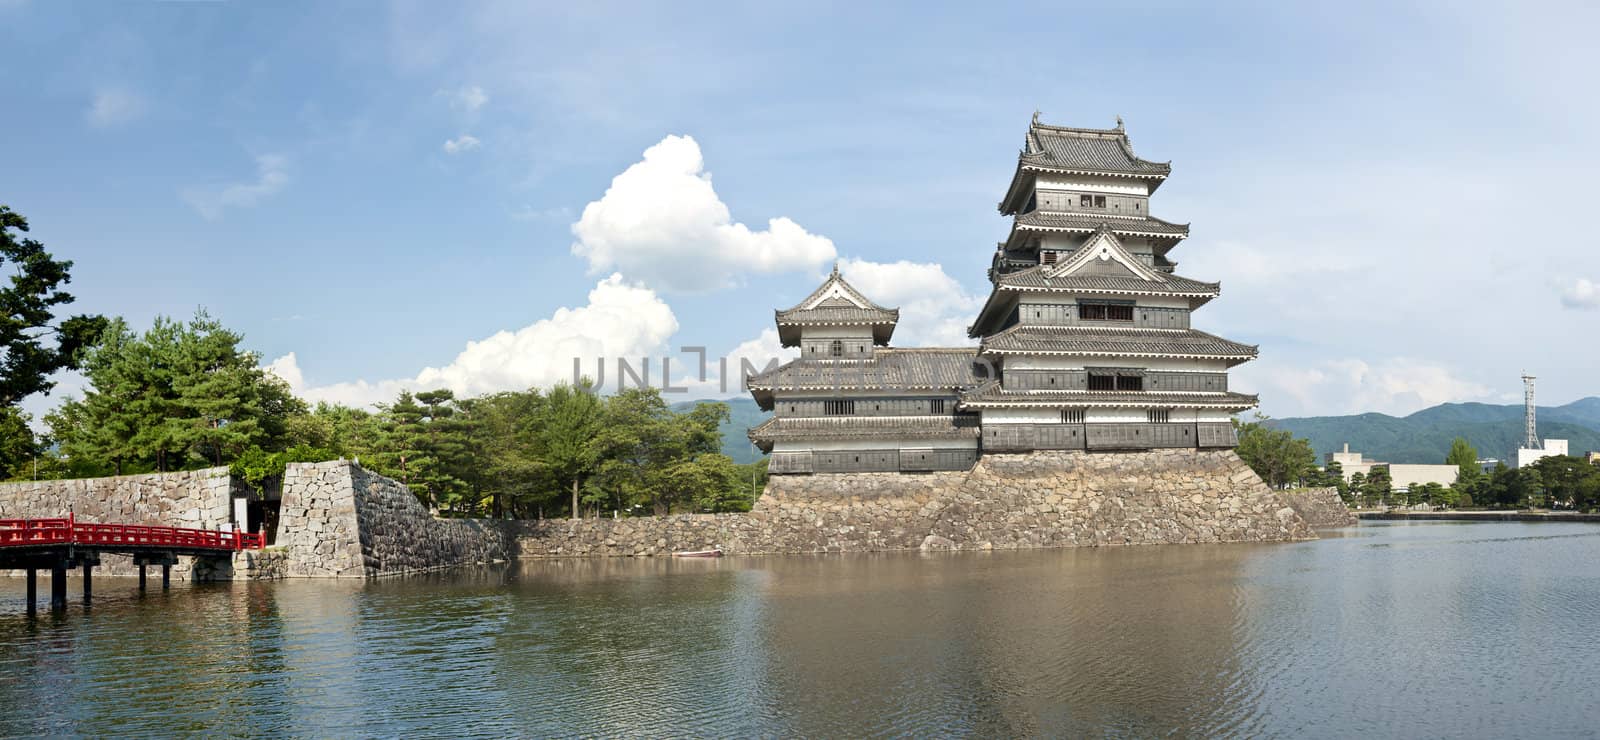 Beautiful medieval castle Matsumoto in the eastern Honshu, Japan